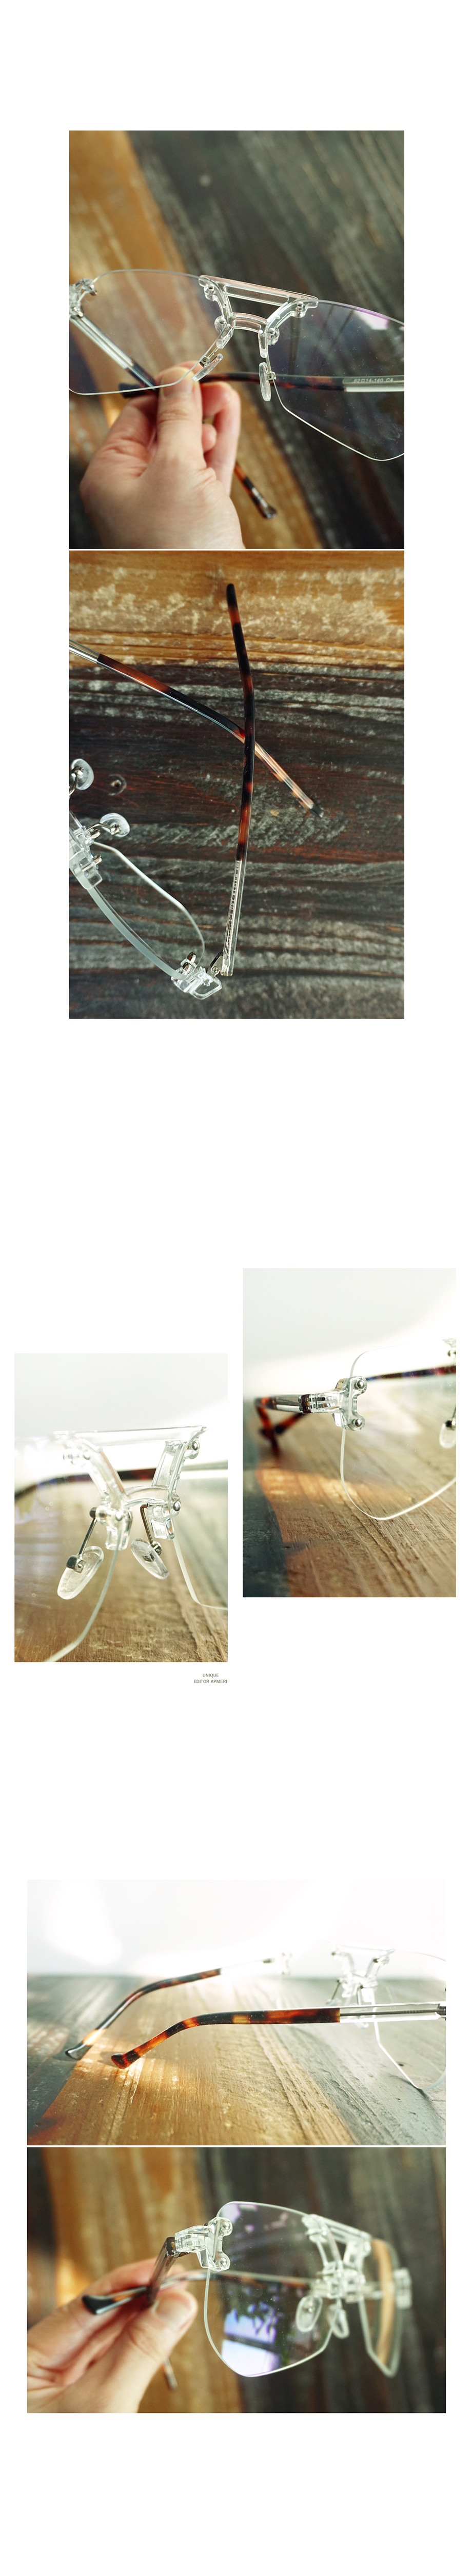 몽한적인 투명오버렌즈 무테 안경 15,750원 - 앞머리 패션잡화, 아이웨어, 안경, 투명안경테 바보사랑 몽한적인 투명오버렌즈 무테 안경 15,750원 - 앞머리 패션잡화, 아이웨어, 안경, 투명안경테 바보사랑